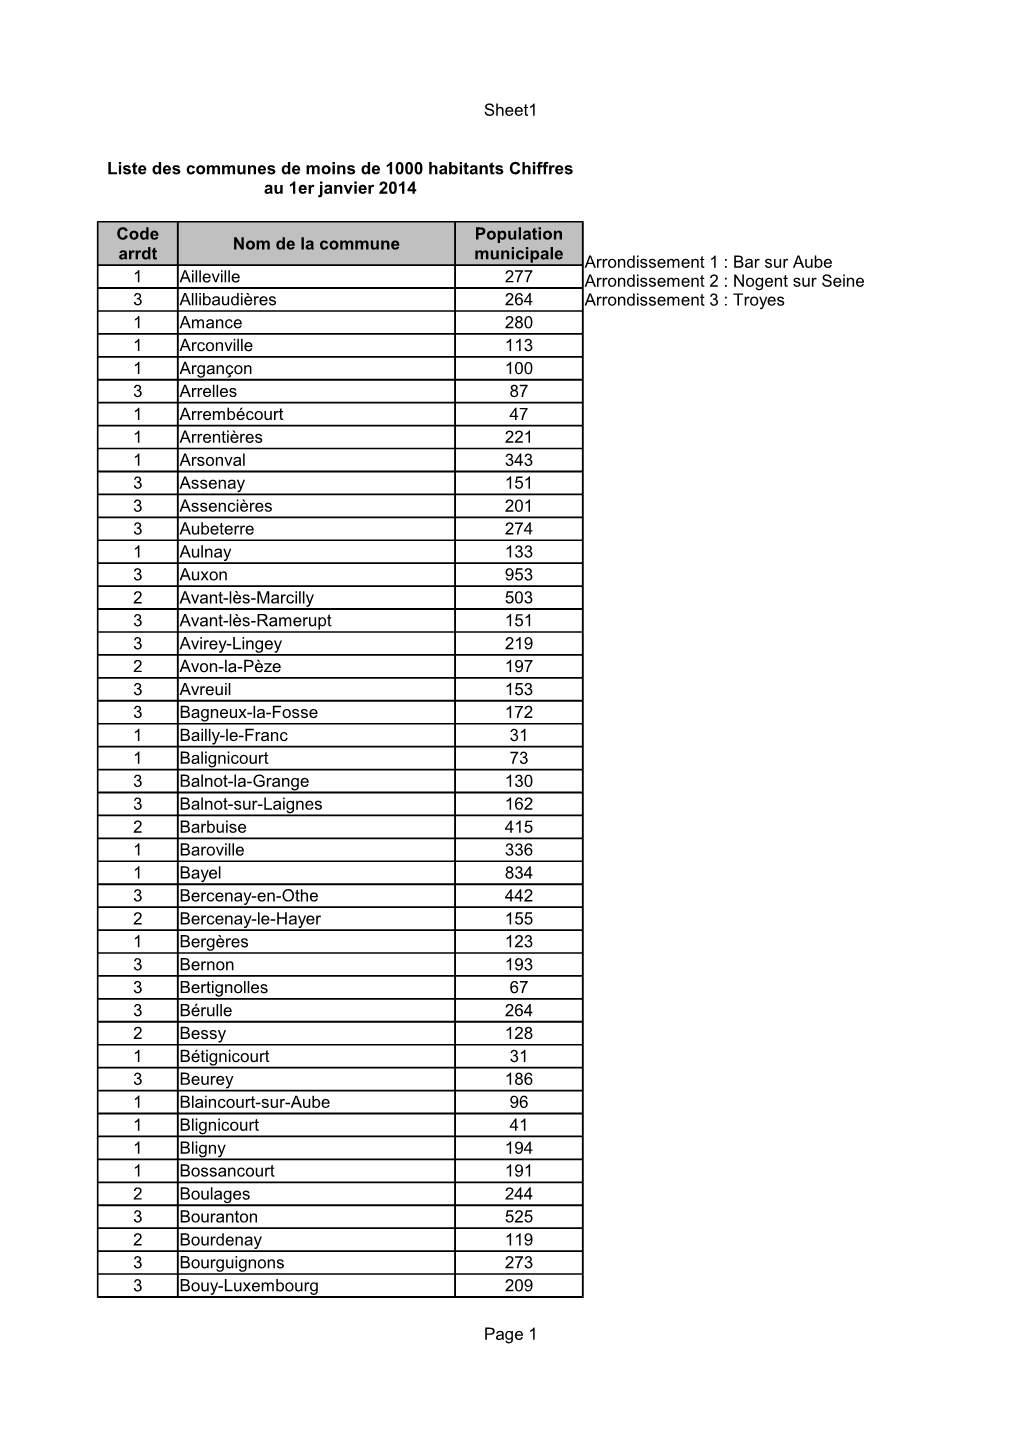 Liste Des Communes De Moins De 1000 Habitants Au 1Er Janvier 2014